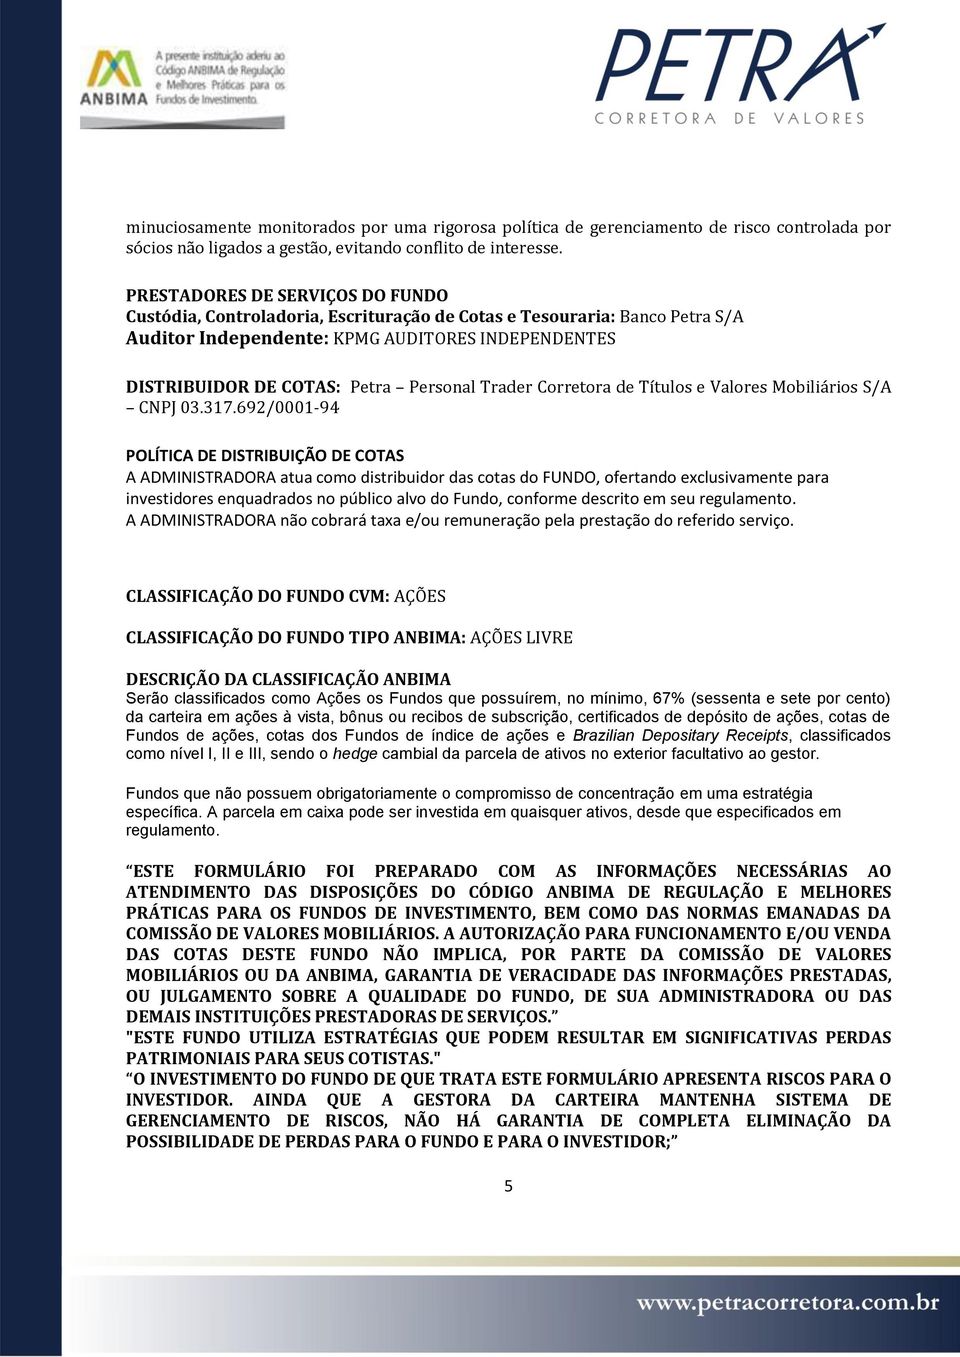 Trader Corretora de Títulos e Valores Mobiliários S/A CNPJ 03.317.